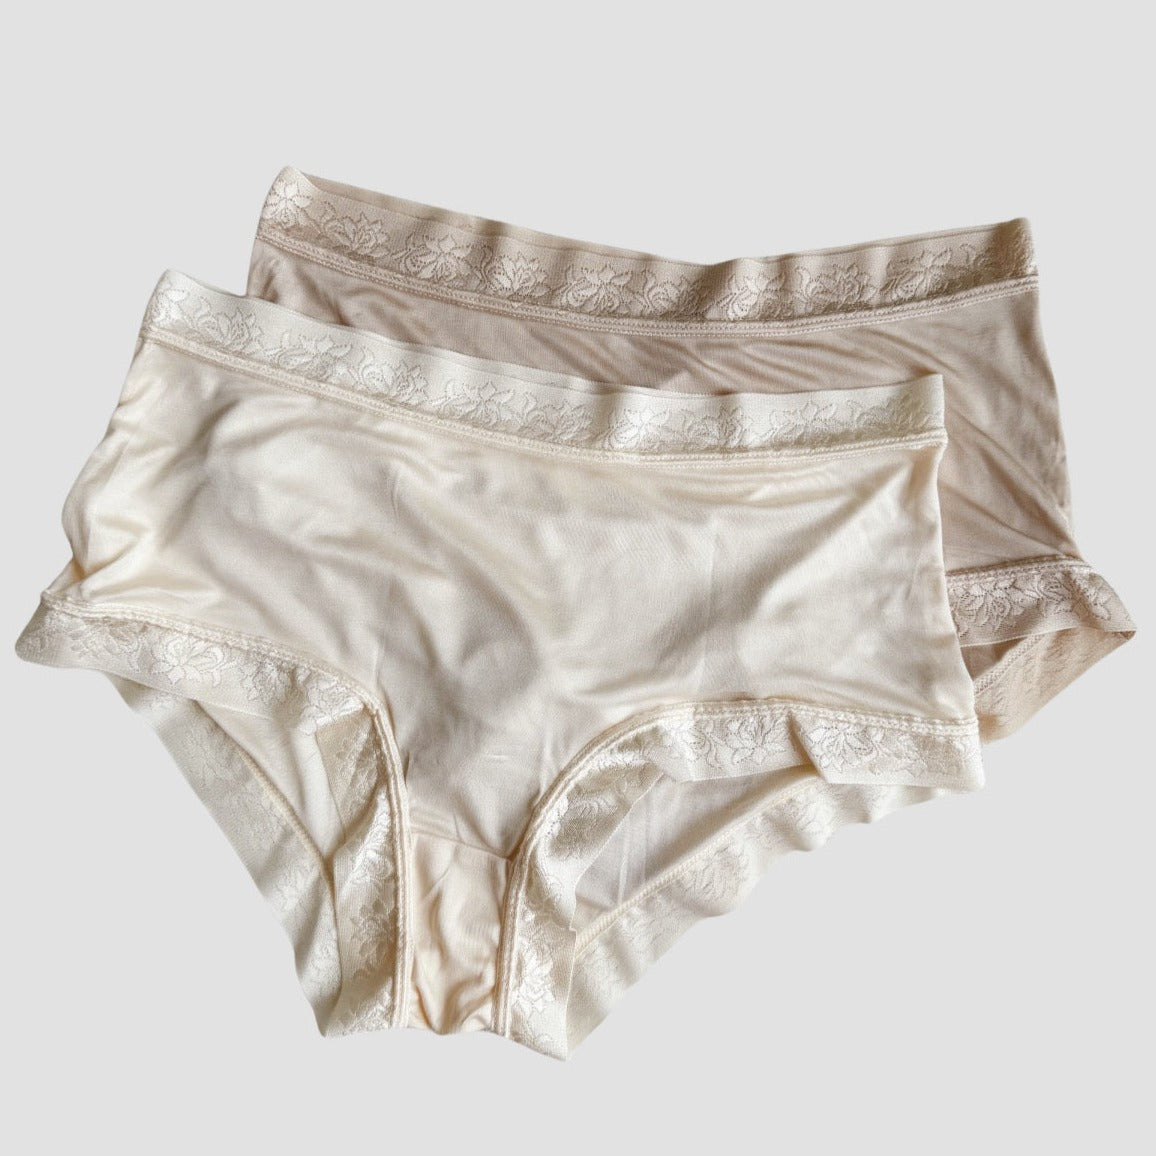 women's silk lingerie and underwear